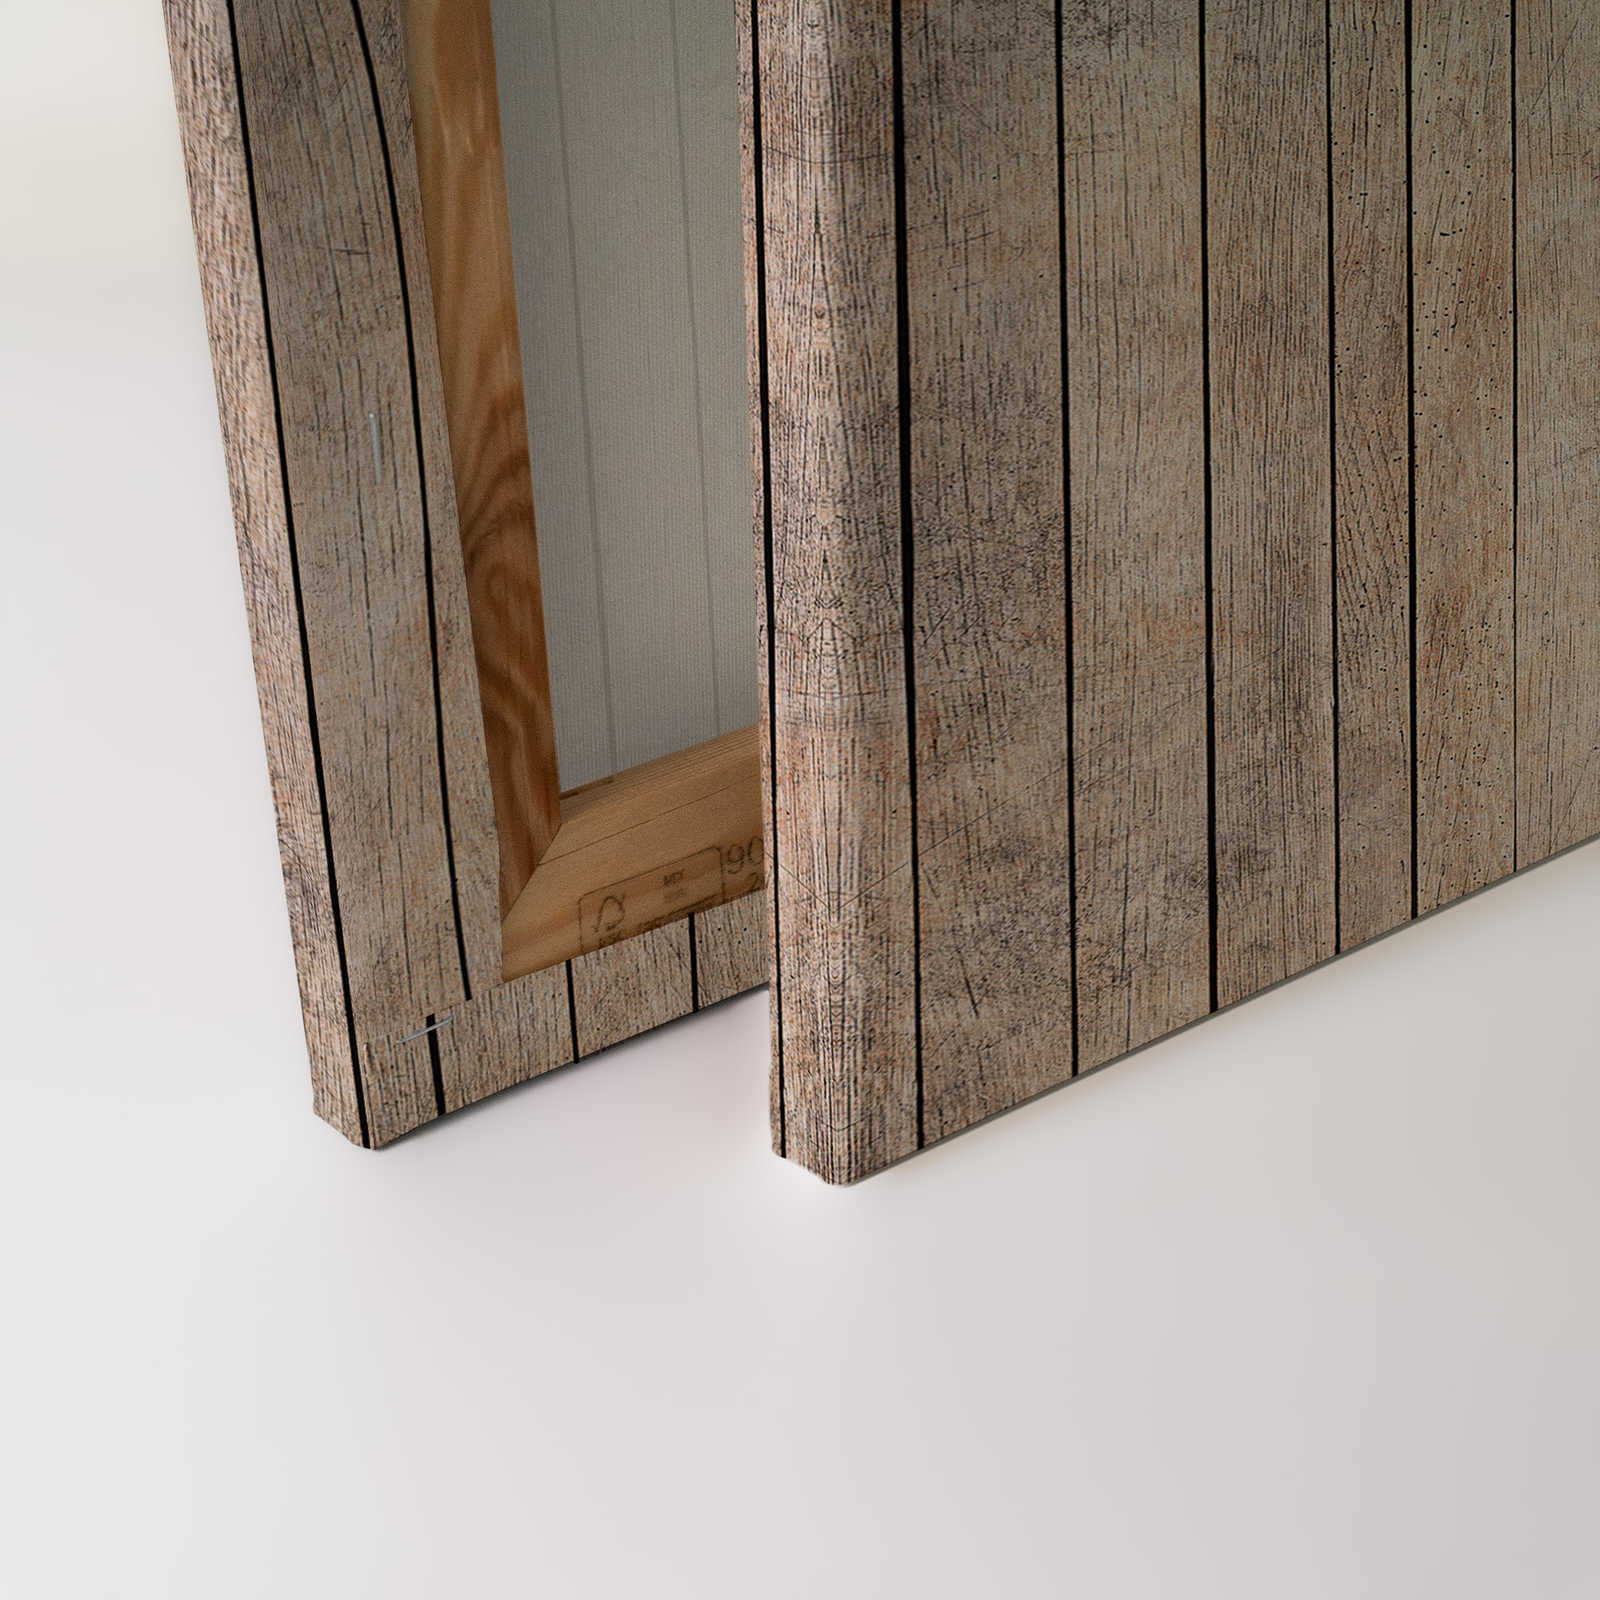             Cuento de hadas 1 - Tablero de madera pared con lienzo búho - 0,90 m x 0,60 m
        